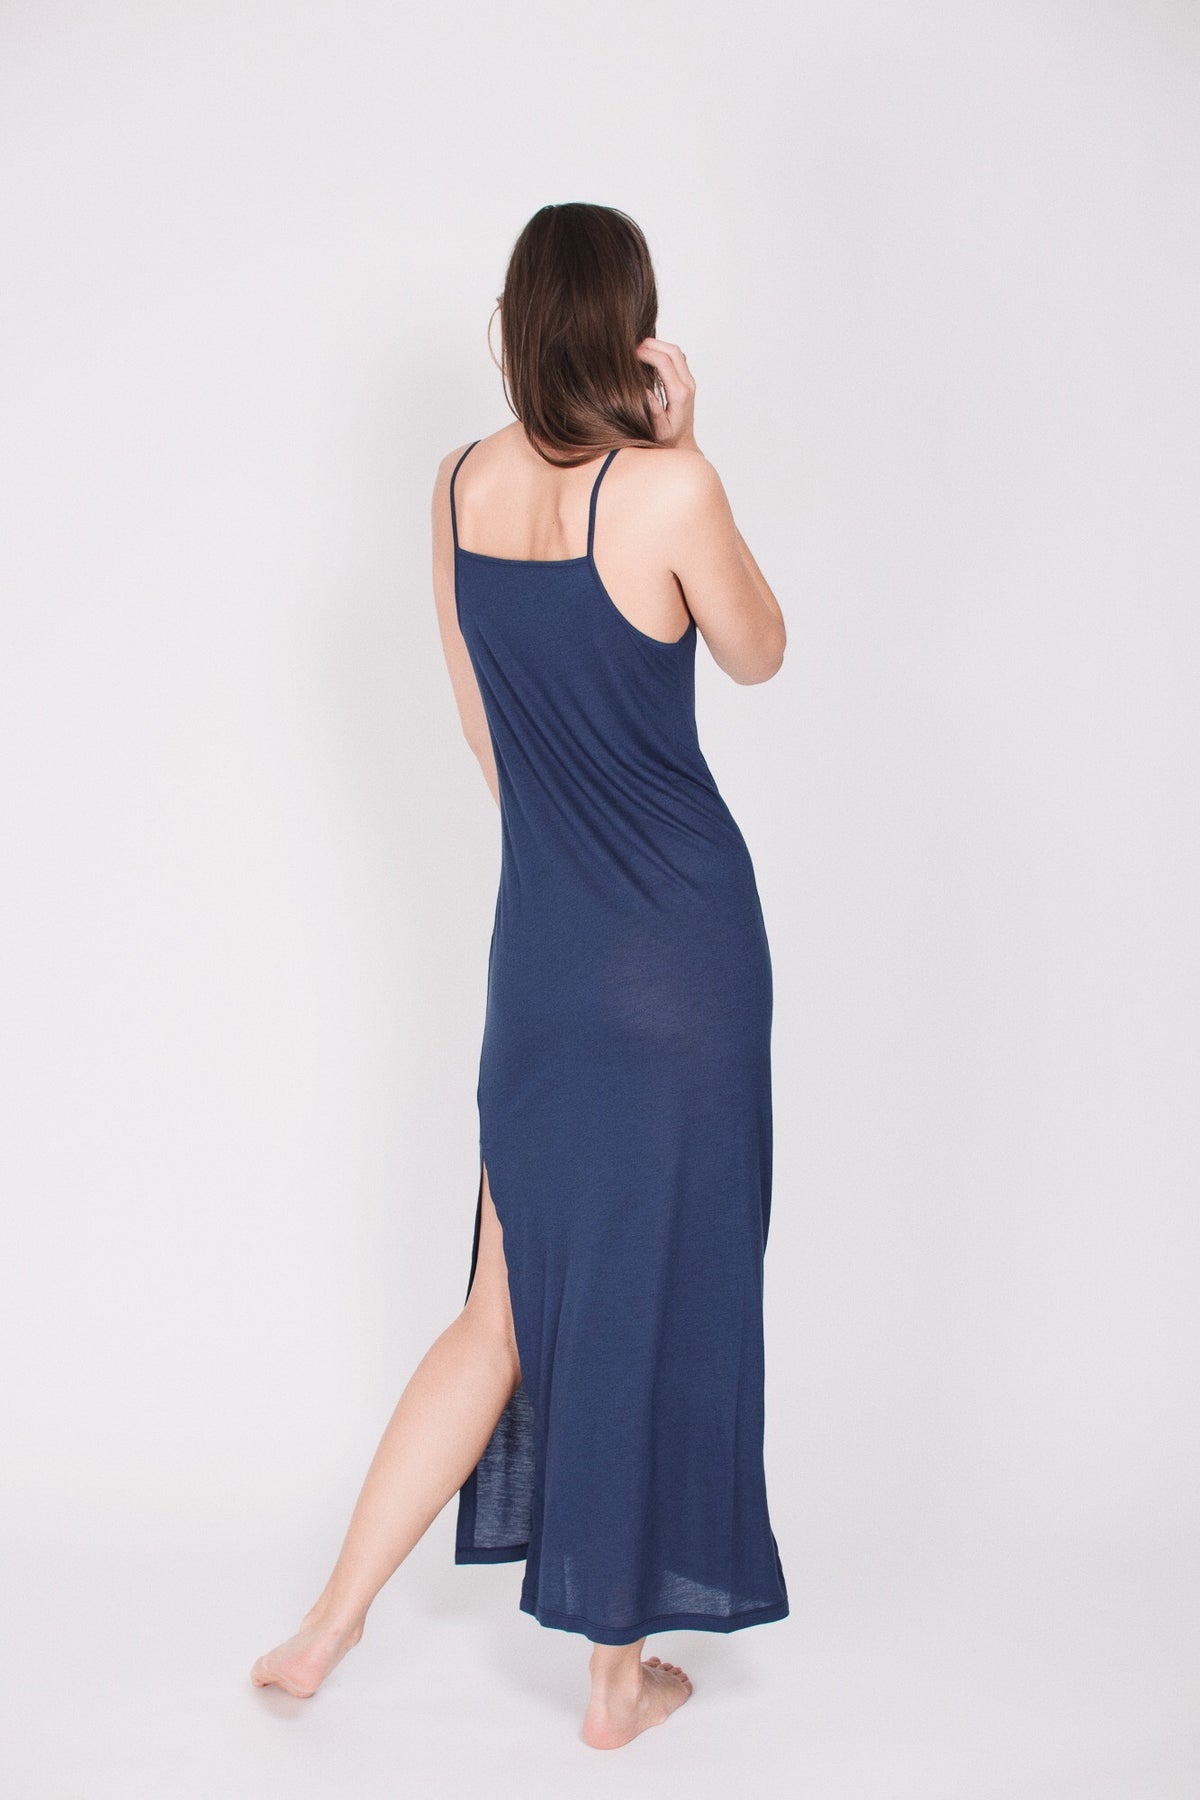 The Slip Dress : With Cashmere - Deep Sea Blue - AWAN - Loungewear - VILLOID.no